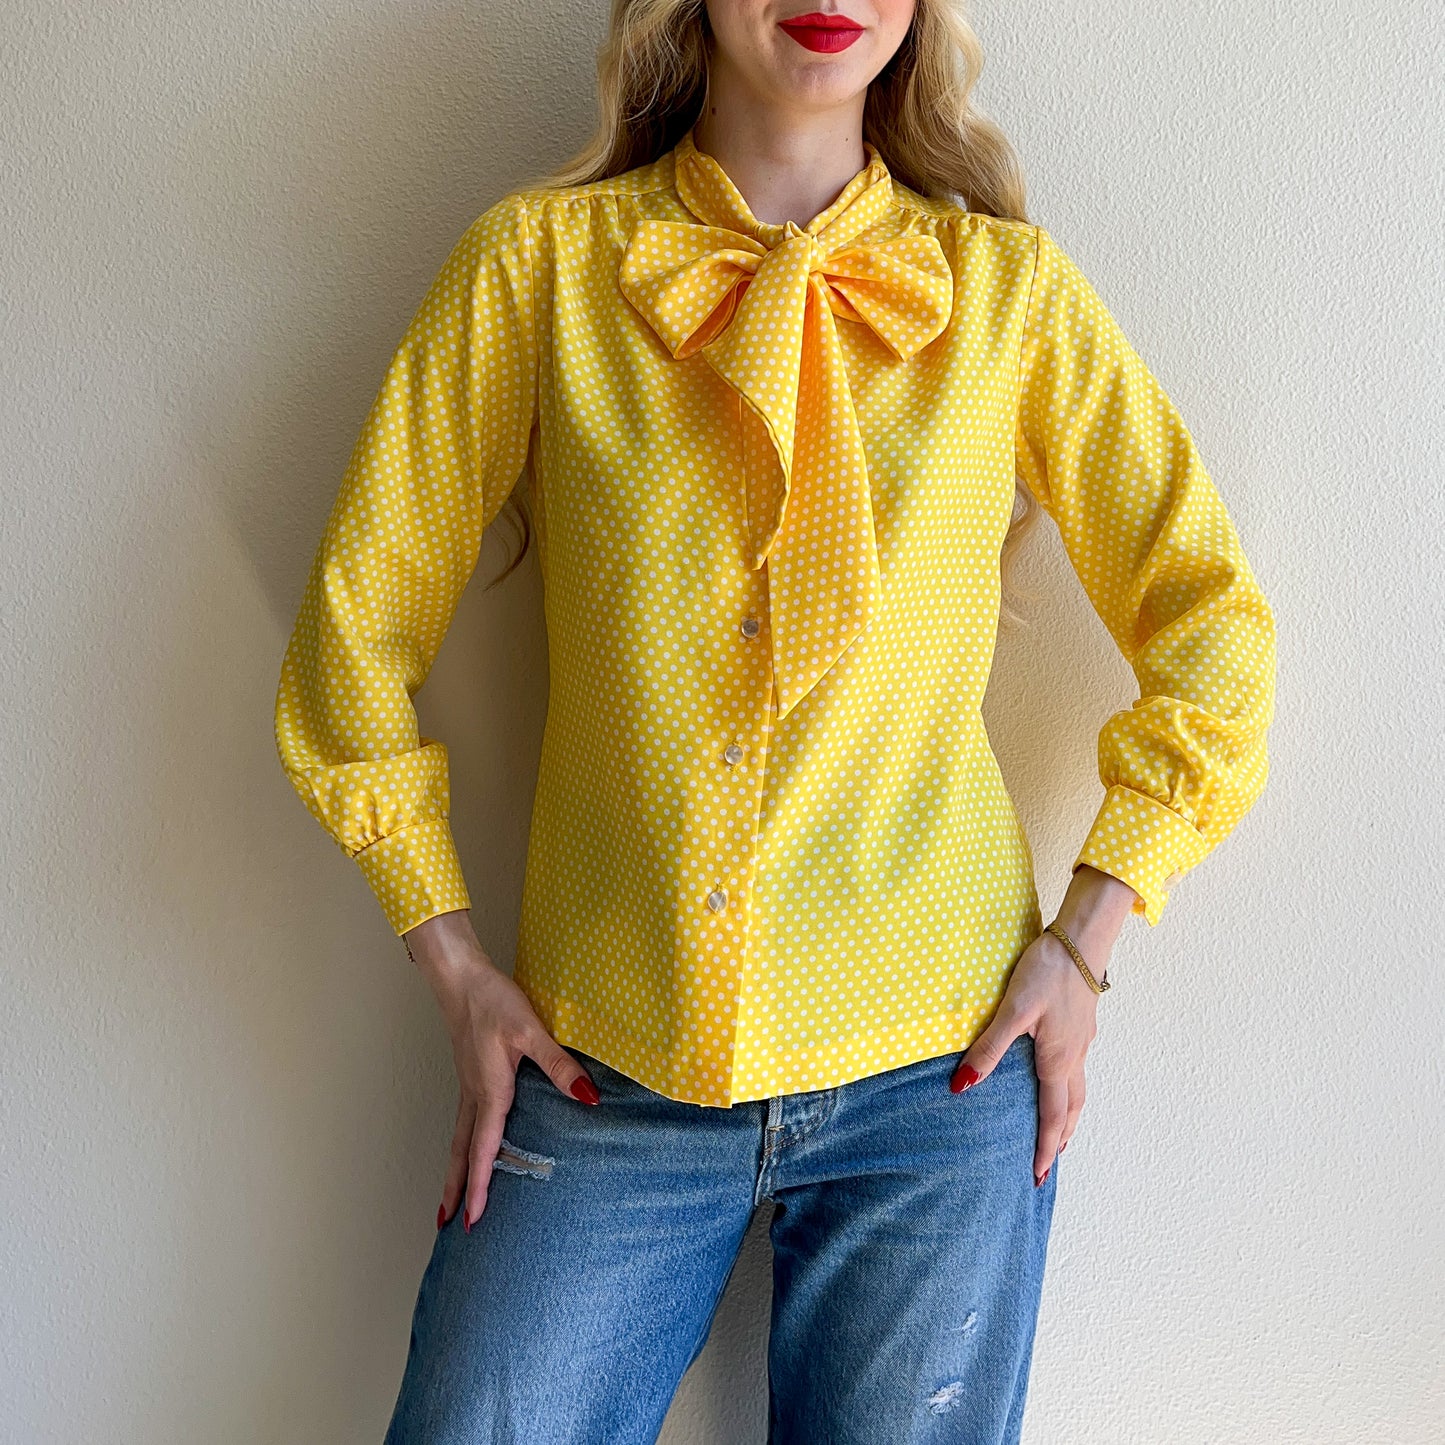 1970s Yellow Polka Dot Tie Blouse (M/L)